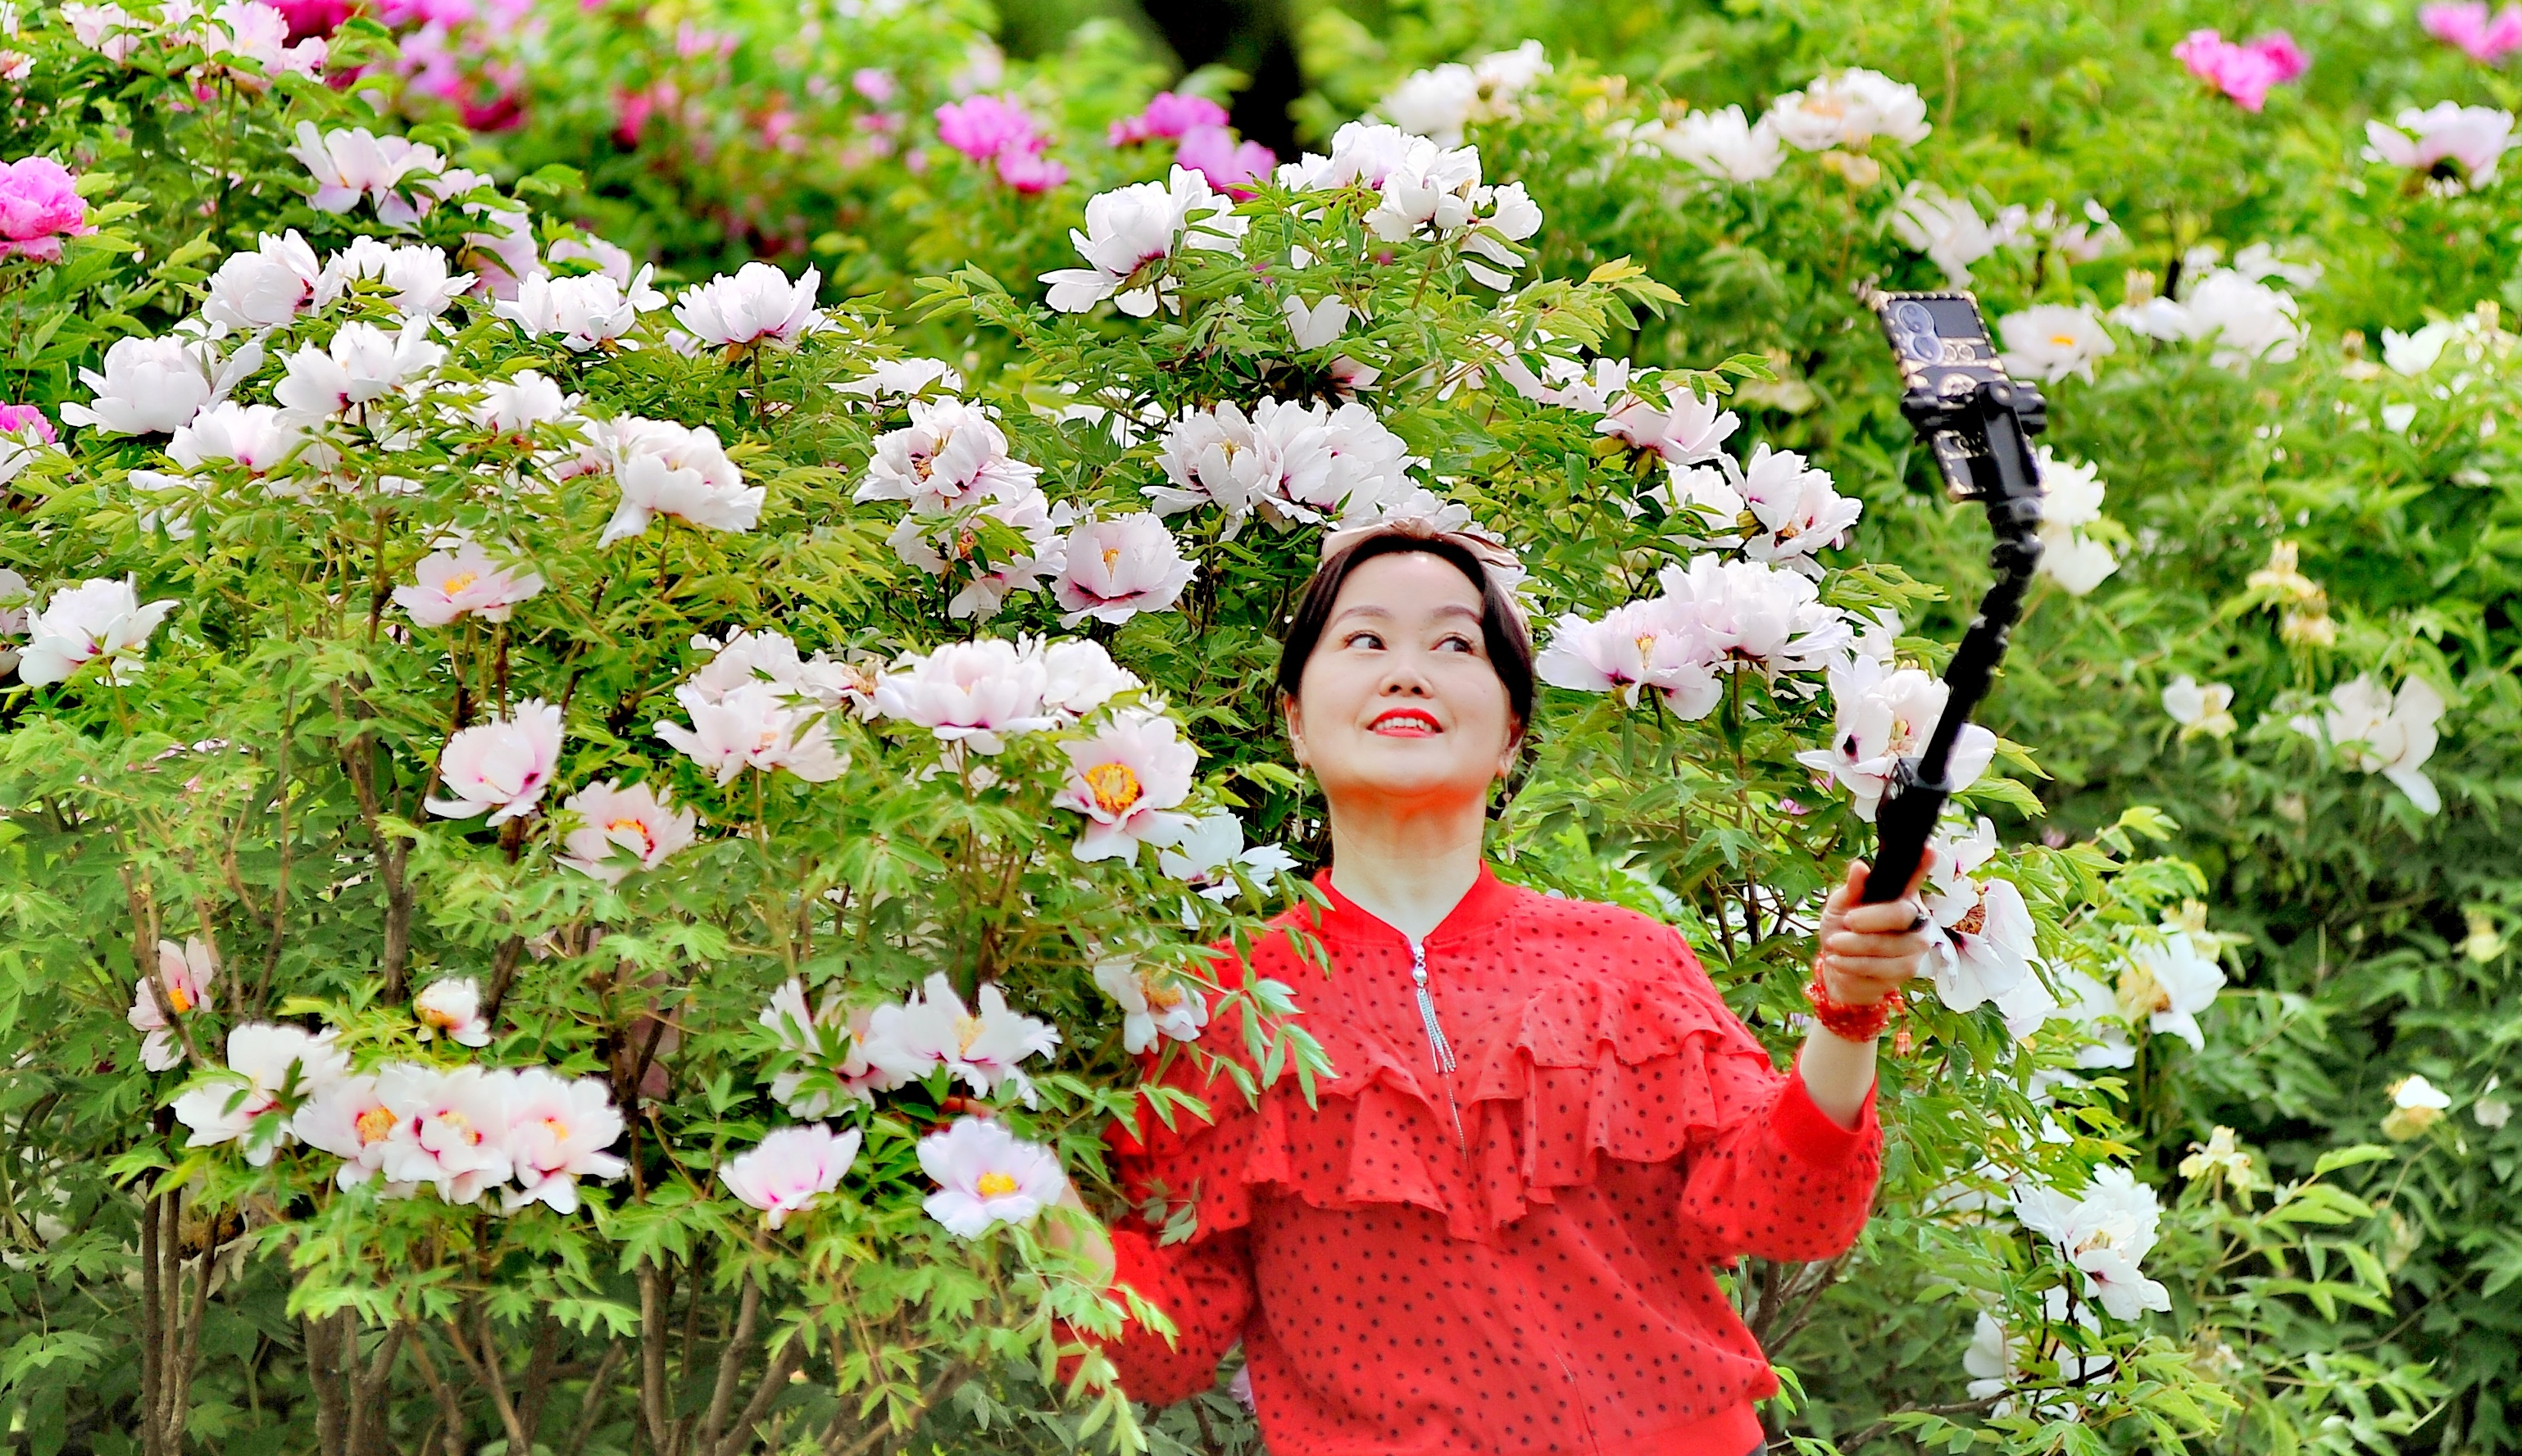 周末，哈尔滨市太阳岛公园牡丹园内，多种颜色的牡丹花已全部开放，姹紫嫣红，非常美丽，吸引许多市民、游客前来观看、拍照。